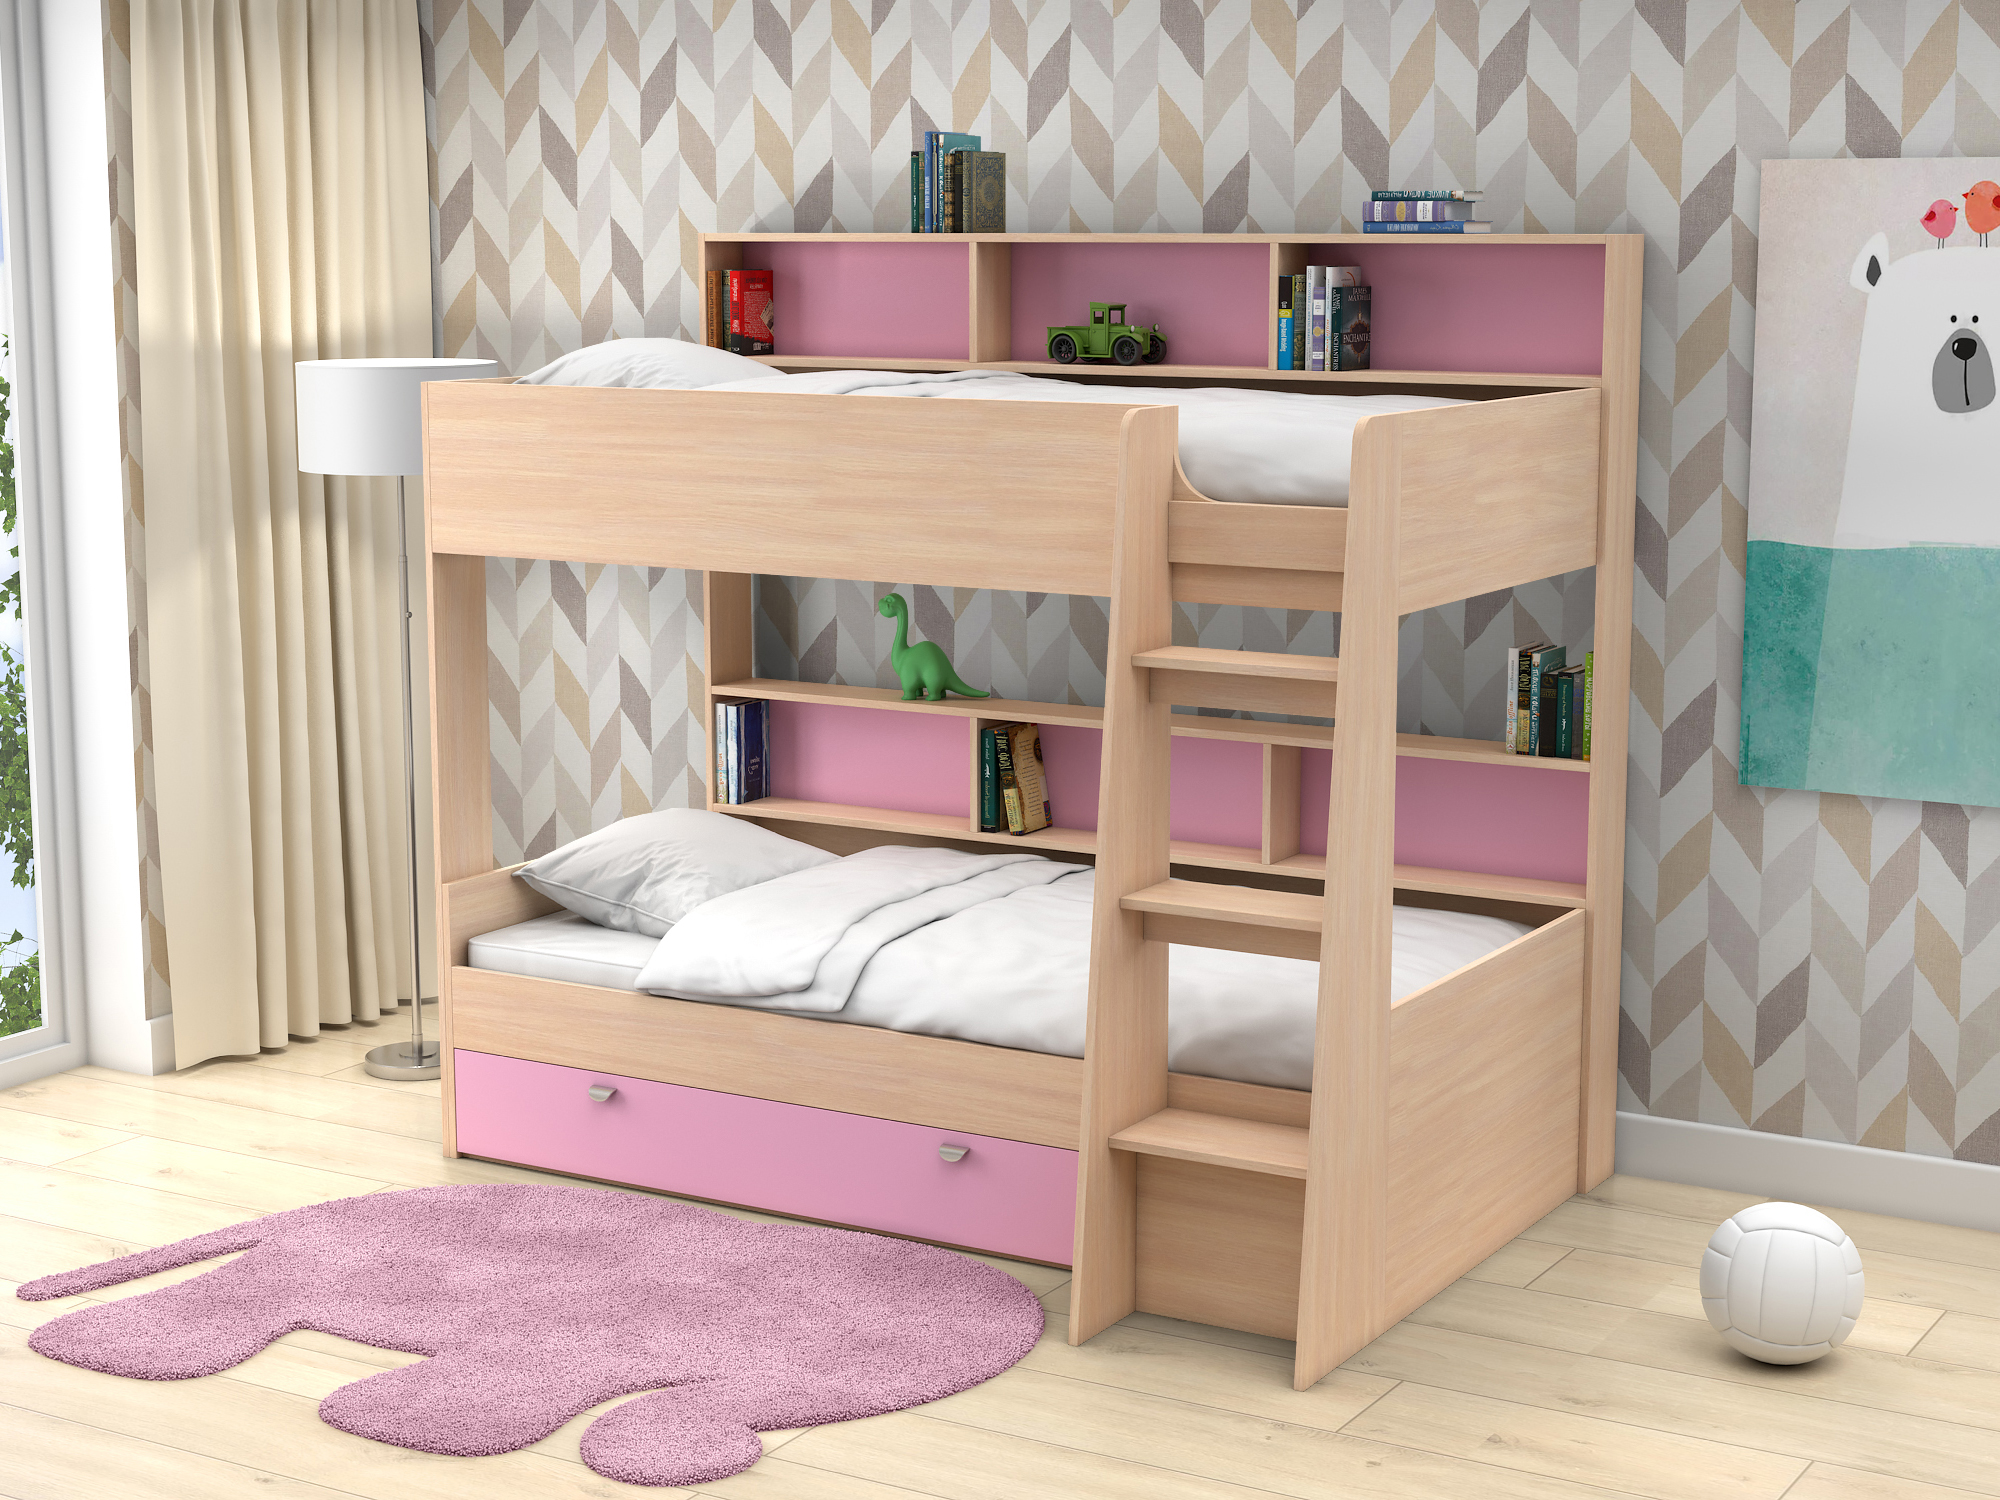 Двухъярусная кровать Golden Kids-1 (90х200) Розовый, Белый, Бежевый, ЛДСП двухъярусная кровать golden kids 1 90х200 дуб молочный белый бежевый лдсп